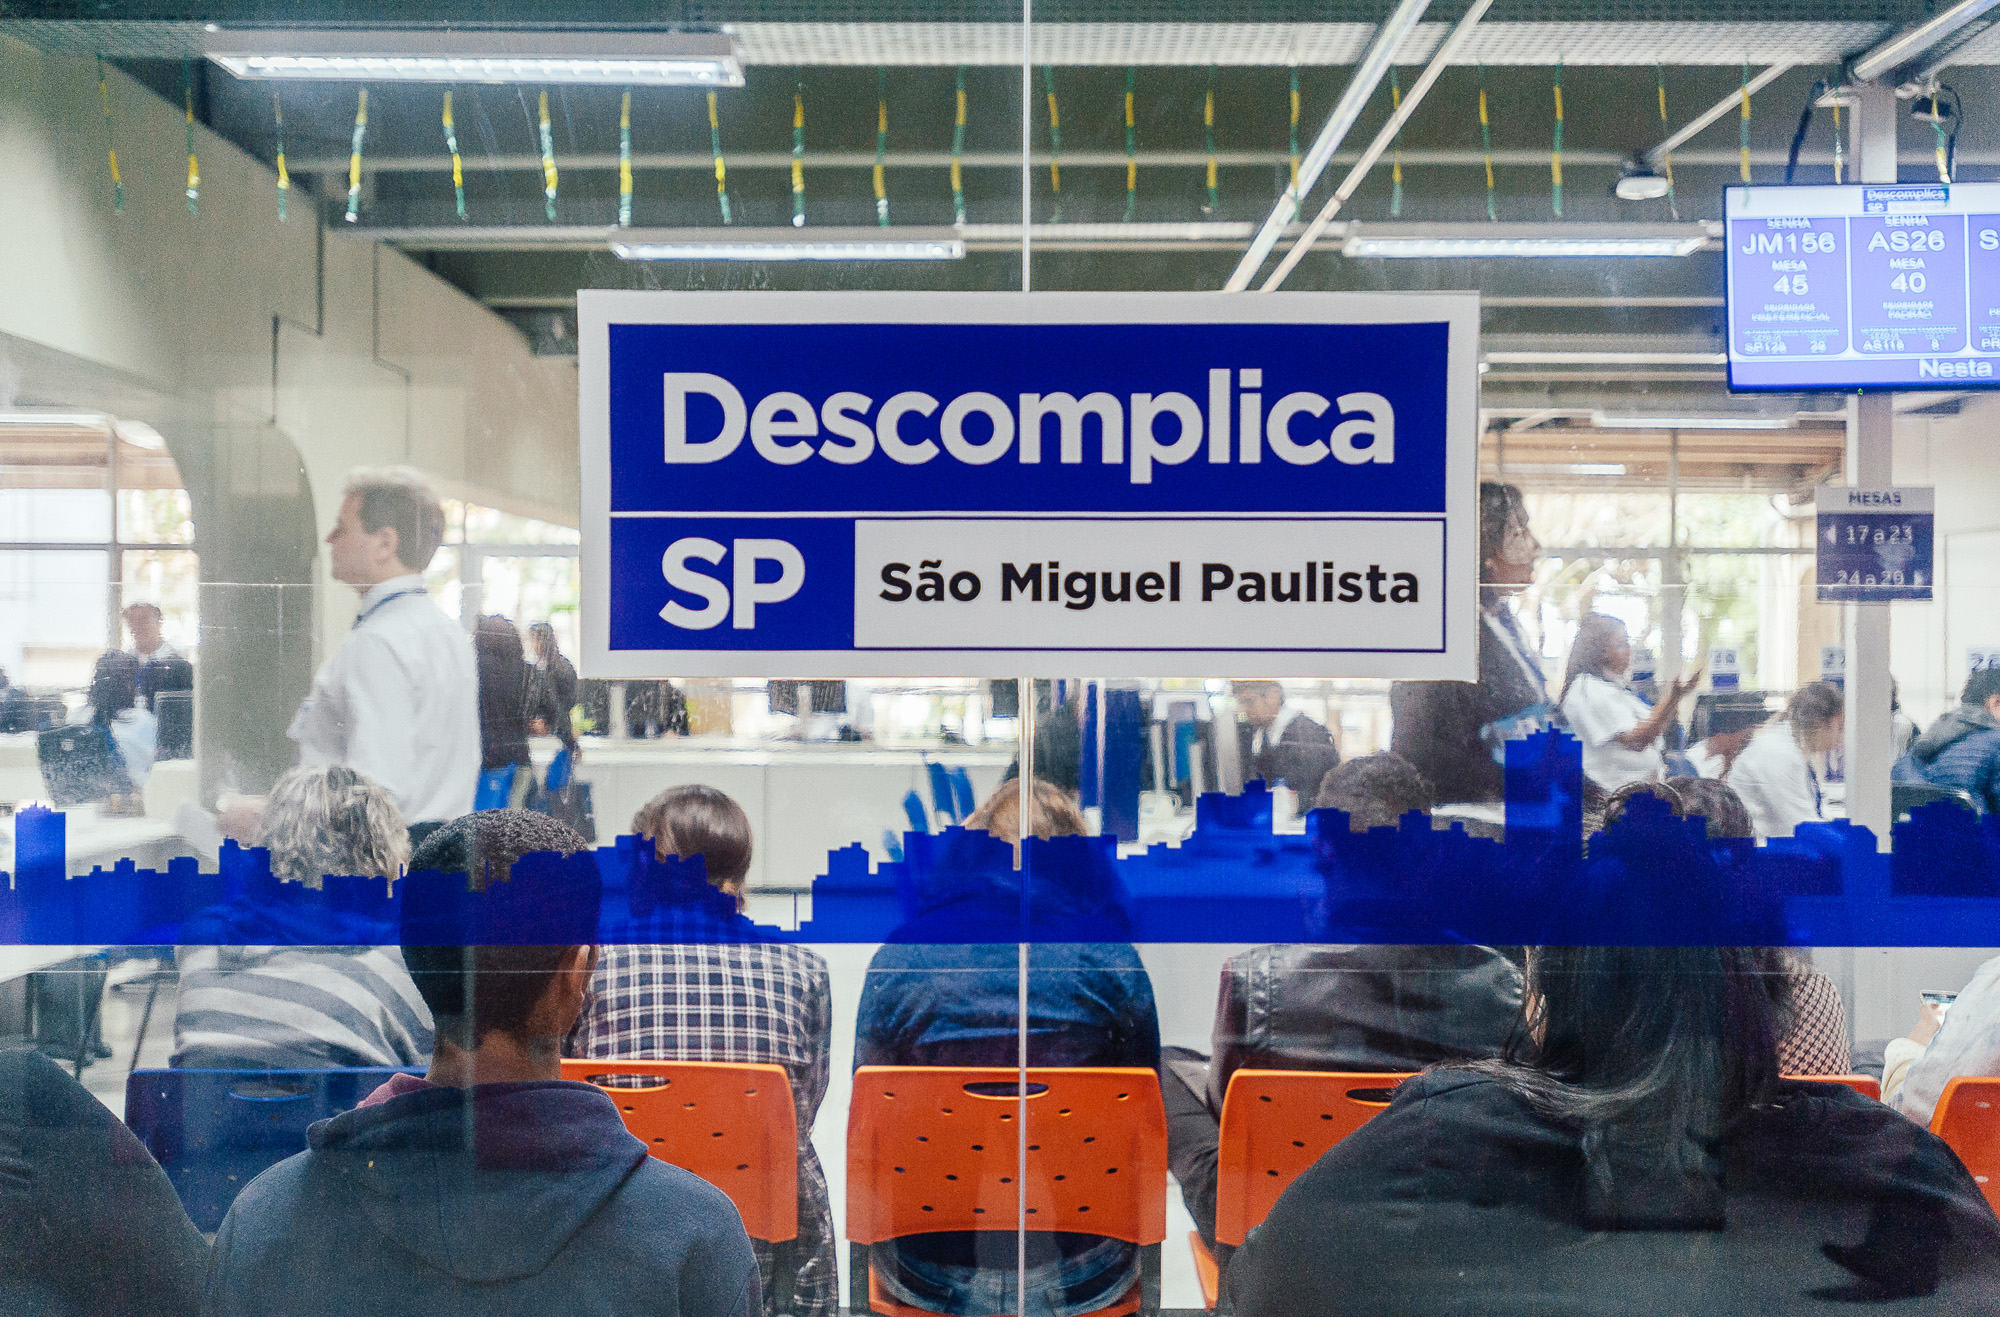 943382-Visita ao Descomplica SP em São Miguel Paulista e Anúncio da Expansão do Programa Descomplica SP